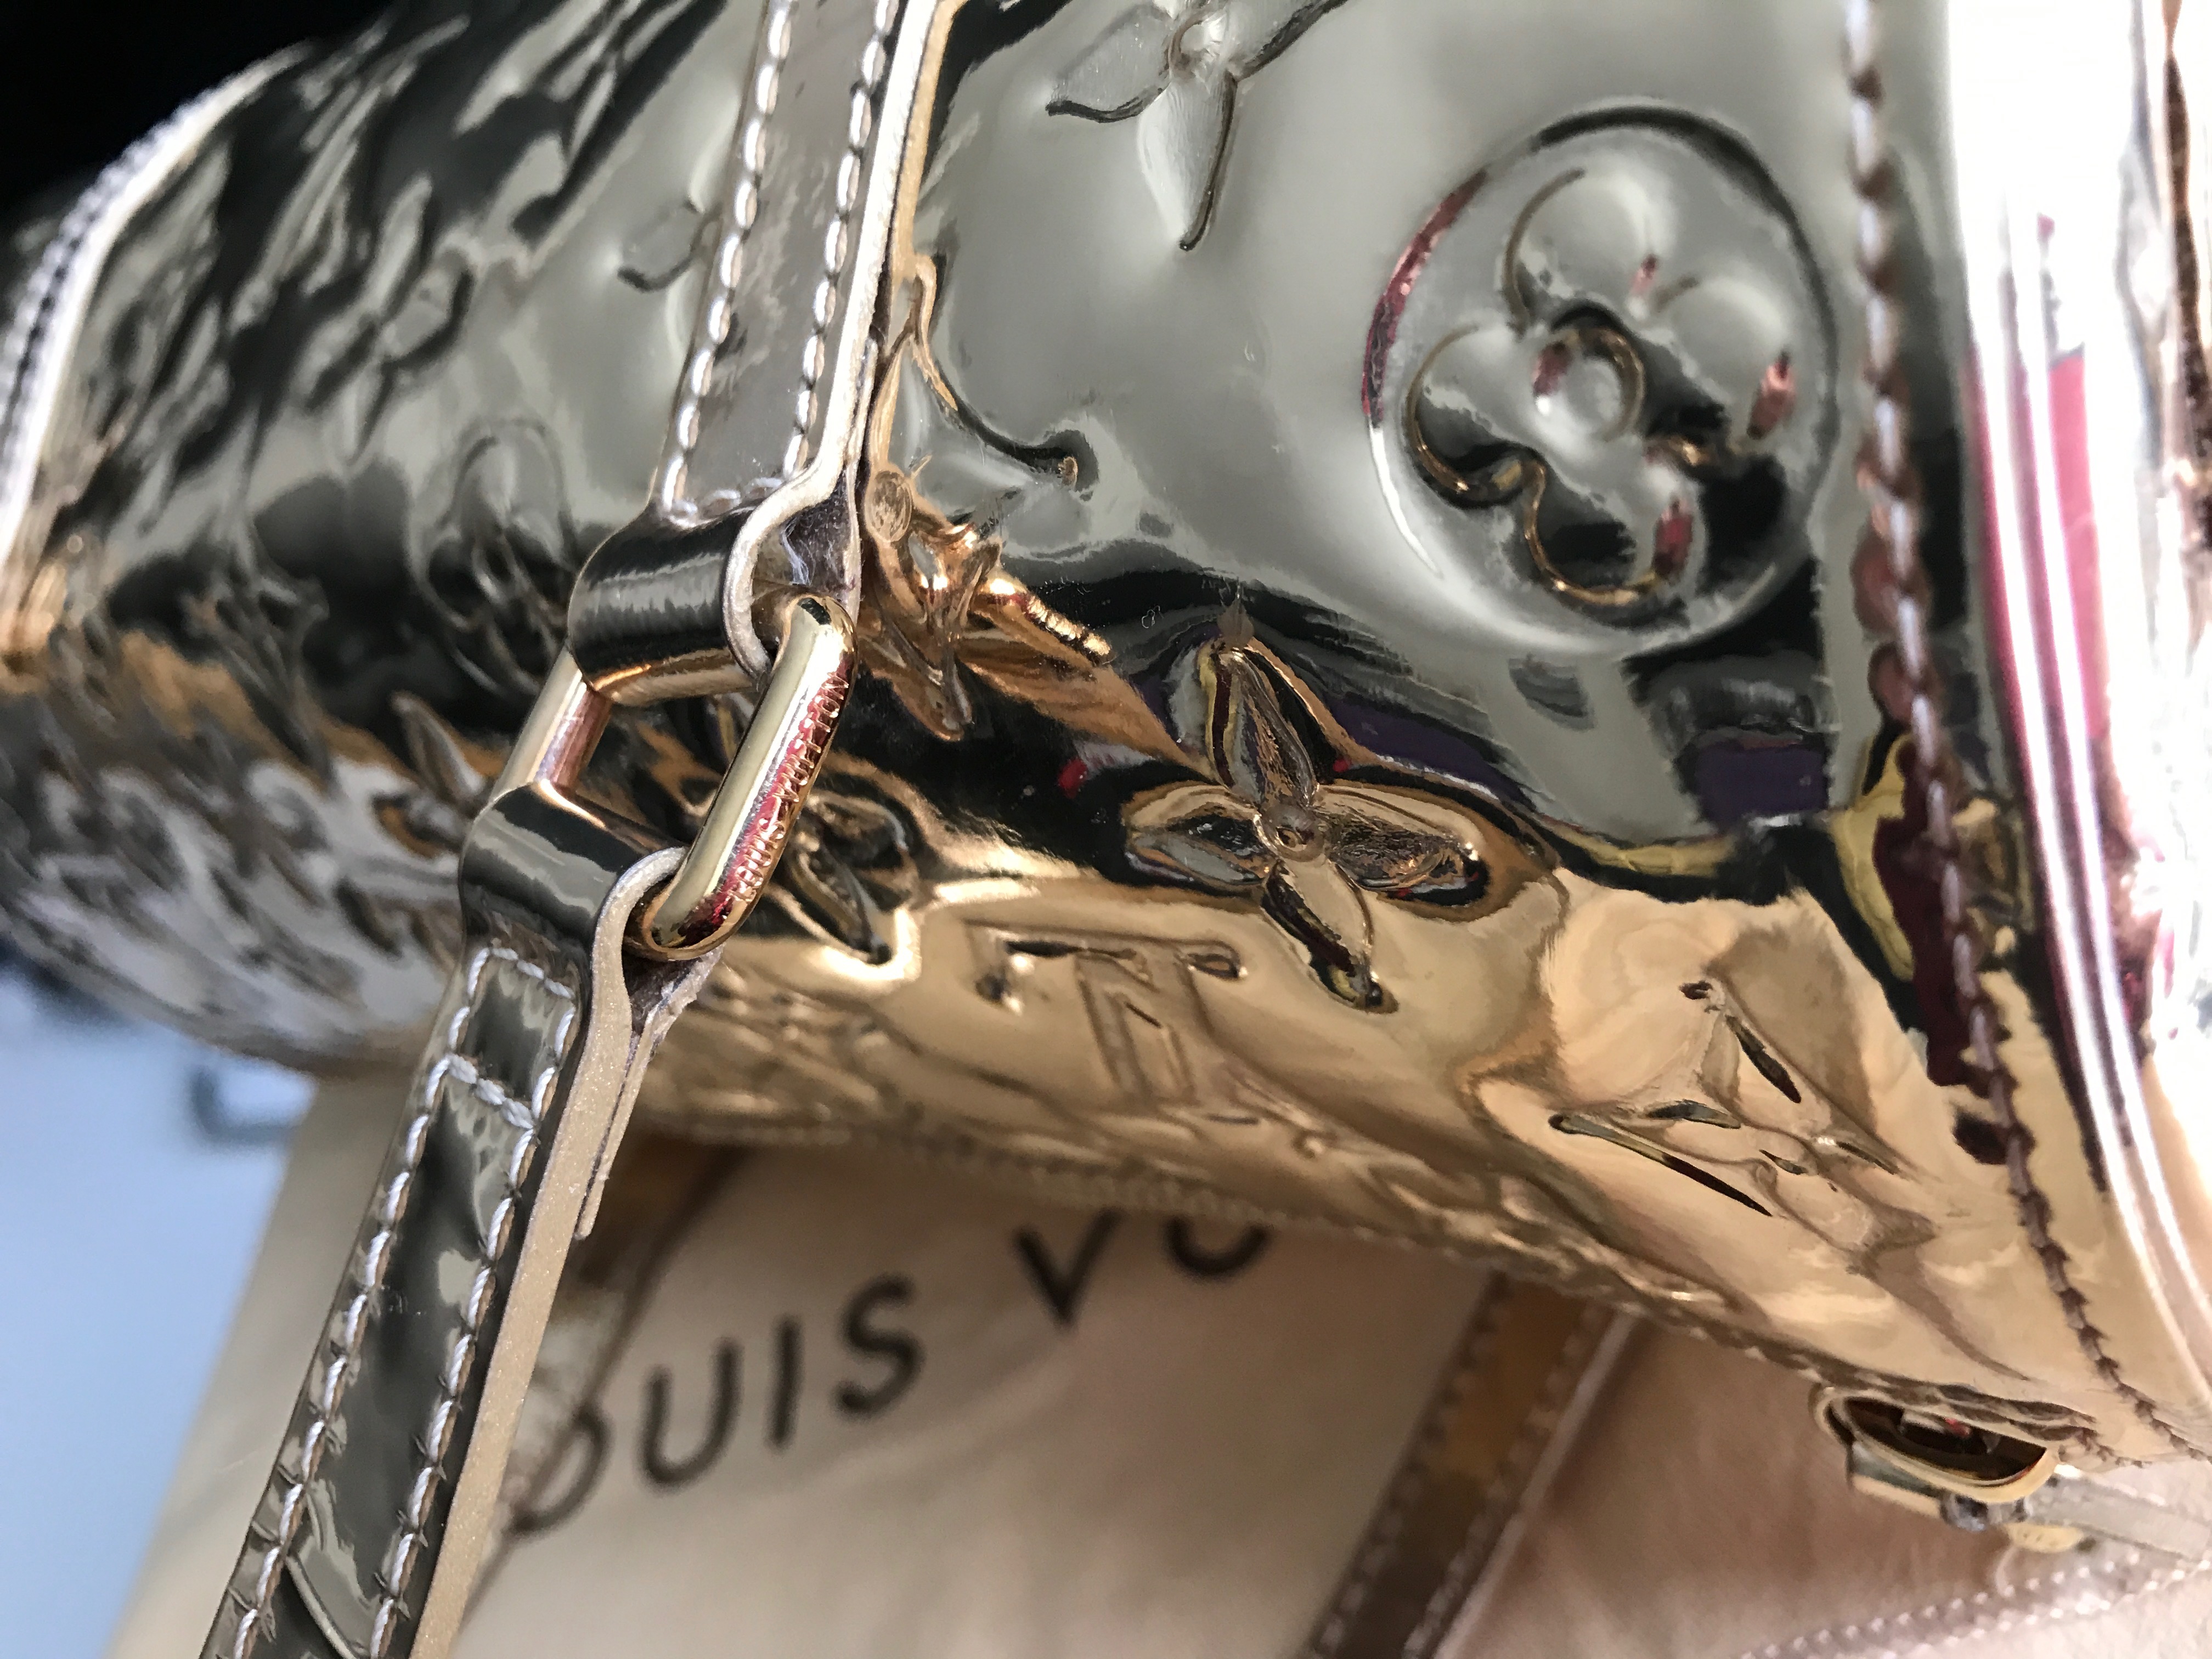 LOUIS VUITTON M95270 Miroir Papillon PM Hand Bag Gold Monogram